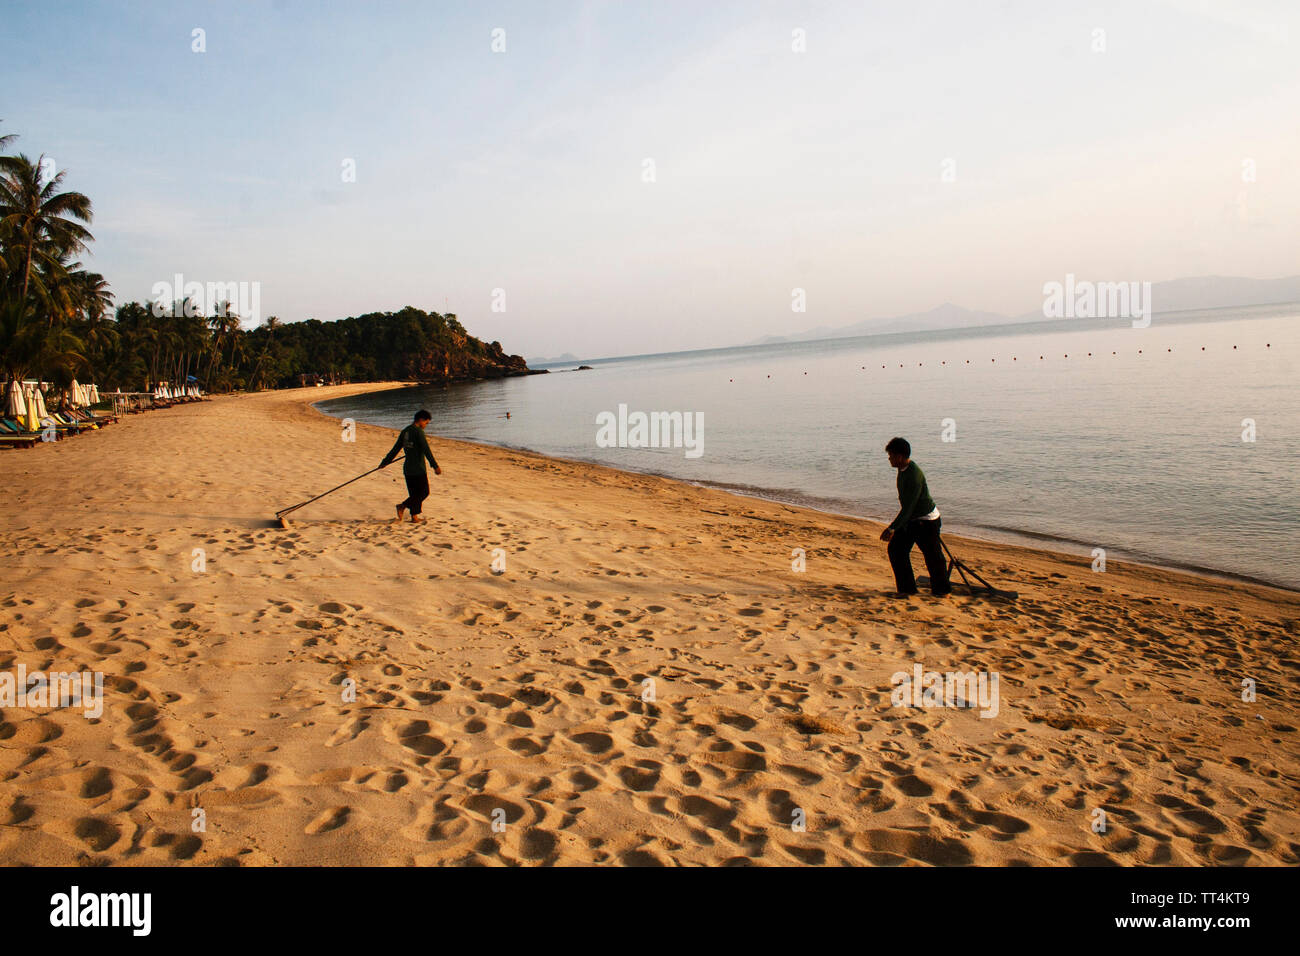 Koh Samui, Thailandia - Aprile 23, 2012: un uomo sta conquistando la spiaggia al tramonto su Aprile 23, 2013. Koh Samui è una bellissima isola in Tailandia Foto Stock